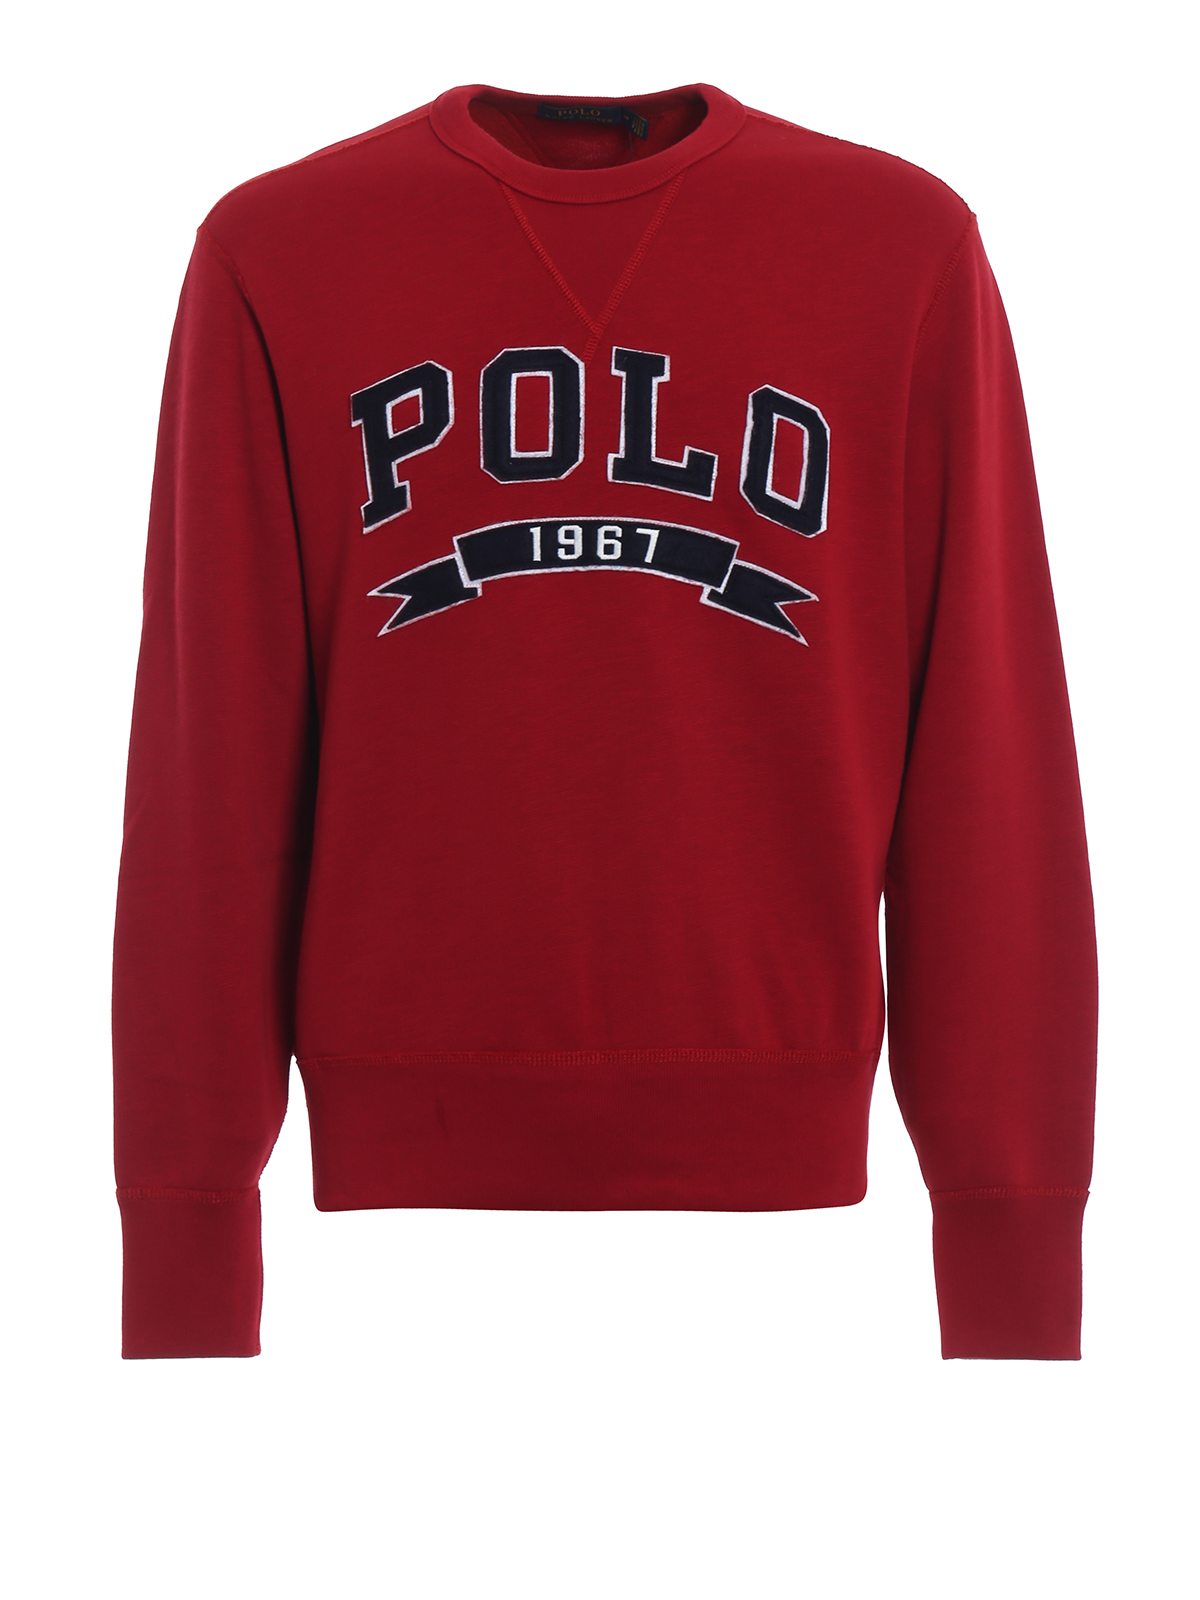 Polo Ralph Lauren - Polo 1967 red 